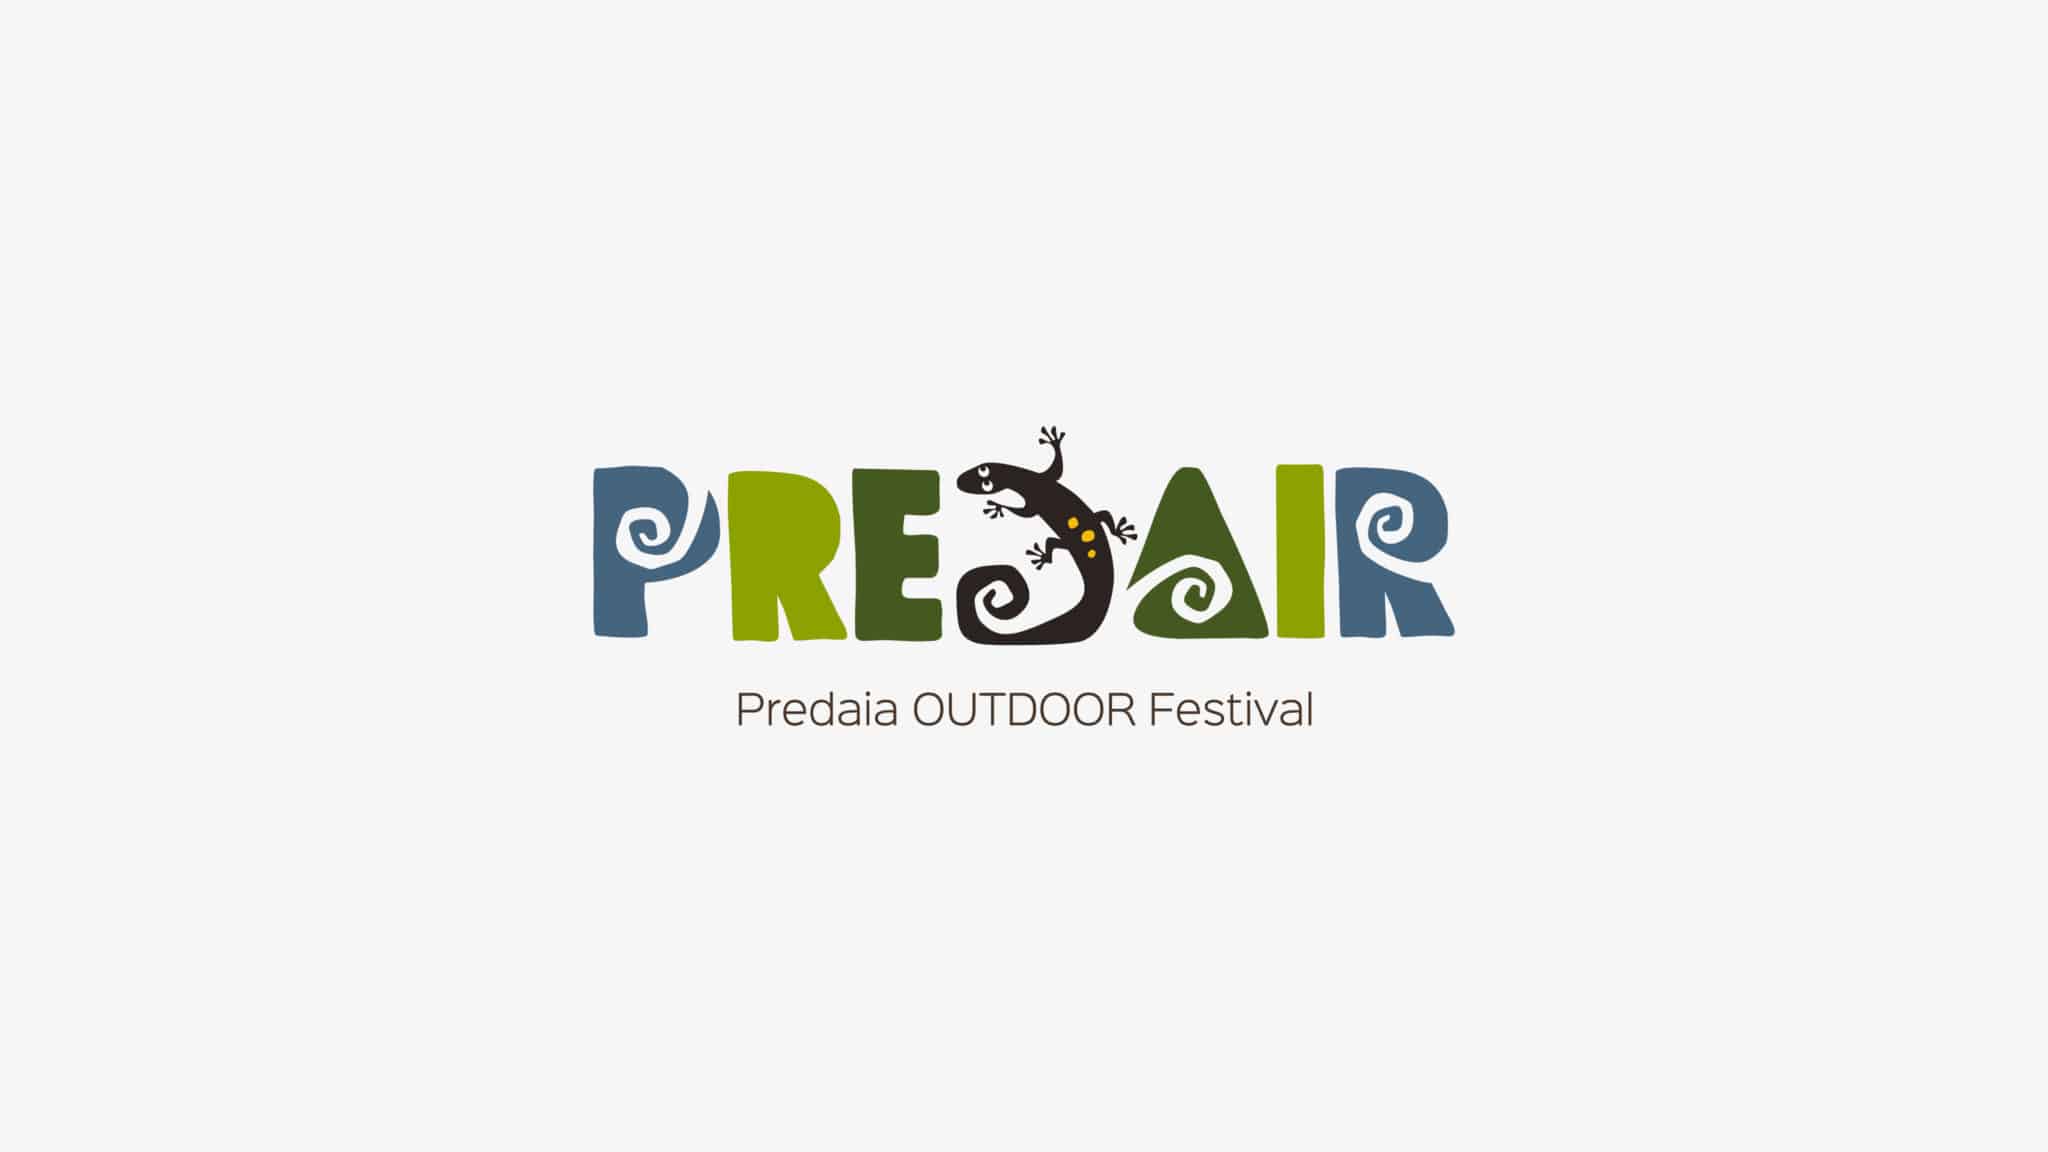 Outdoor - Predaia Festival - logo